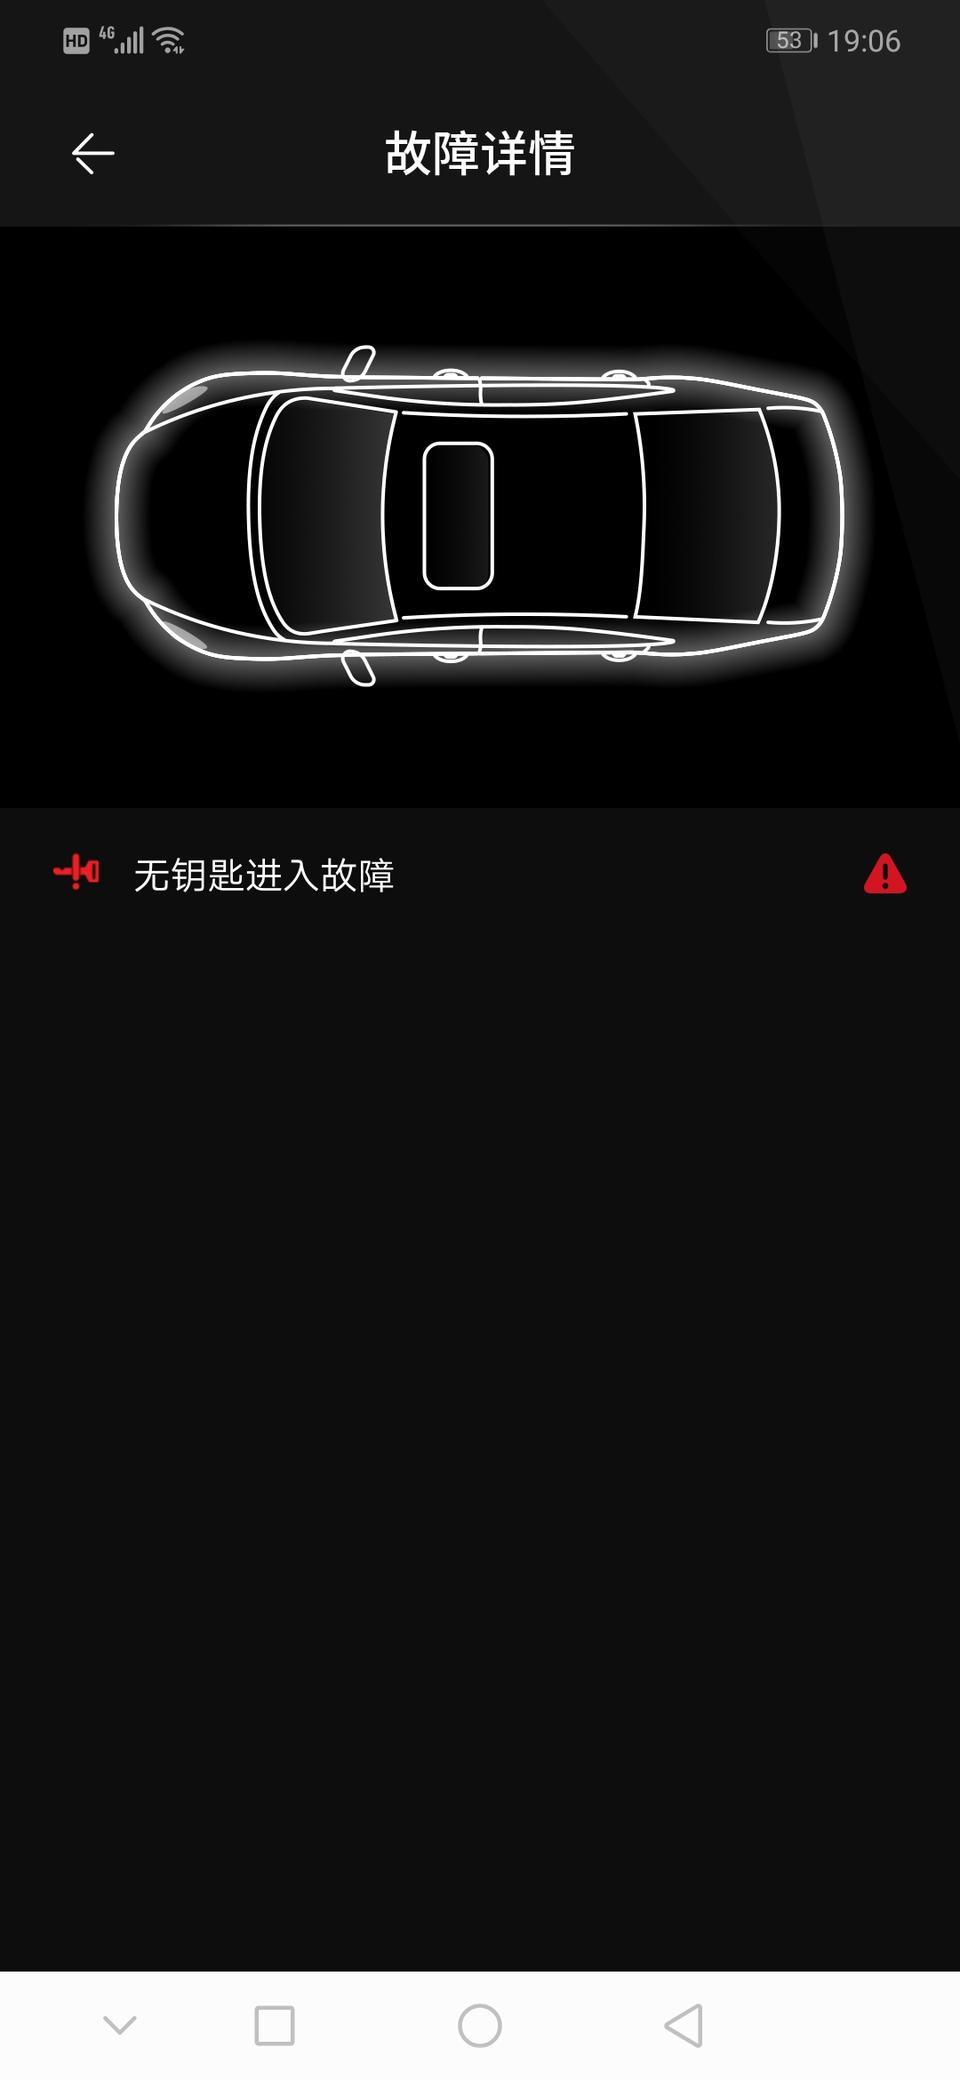 阿特兹为什么车子启动后仪表盘一直显示无钥匙系统故障，然后用完车后锁门后app也一直显示。